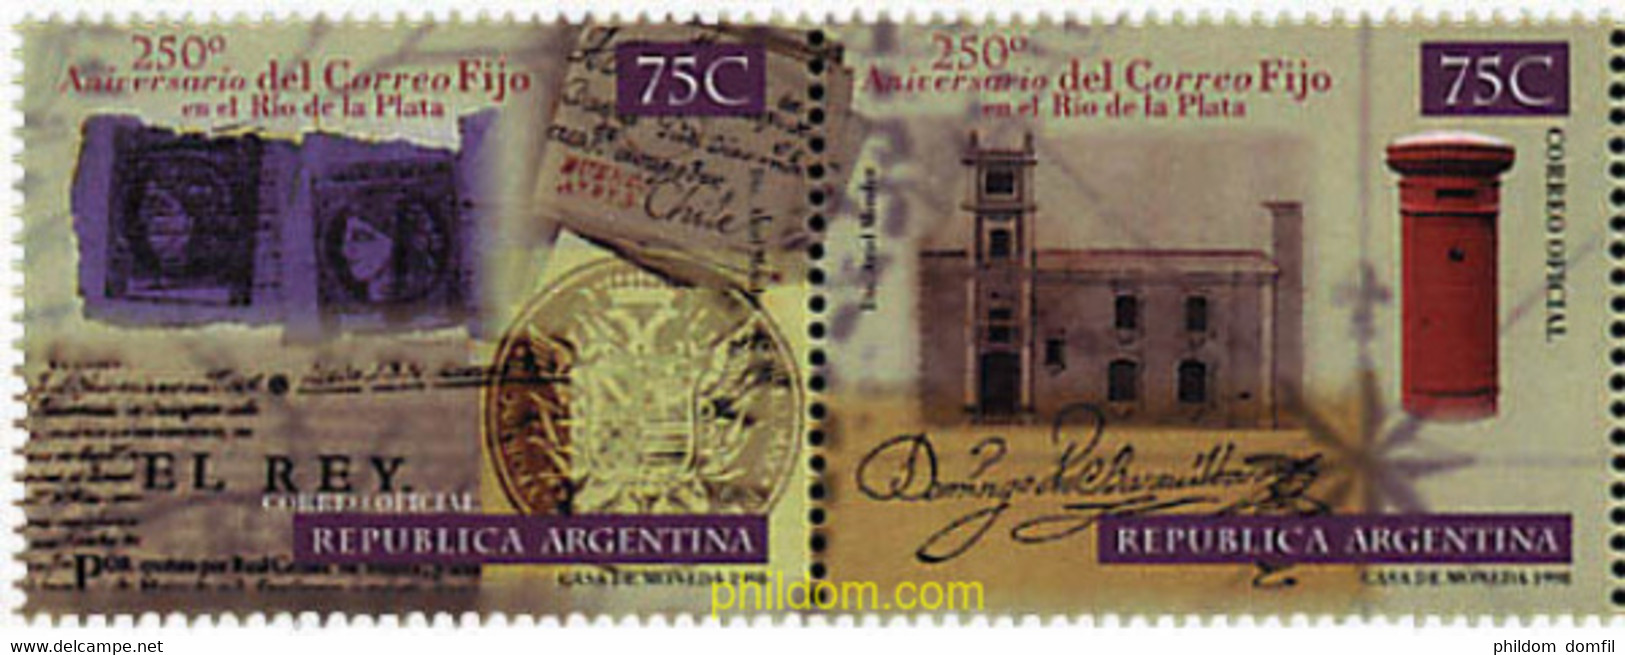 6940 MNH ARGENTINA 1998 250 ANIVERSARIO DEL "CORREO FIJO" EN RIO DE LA PLATA - Usati